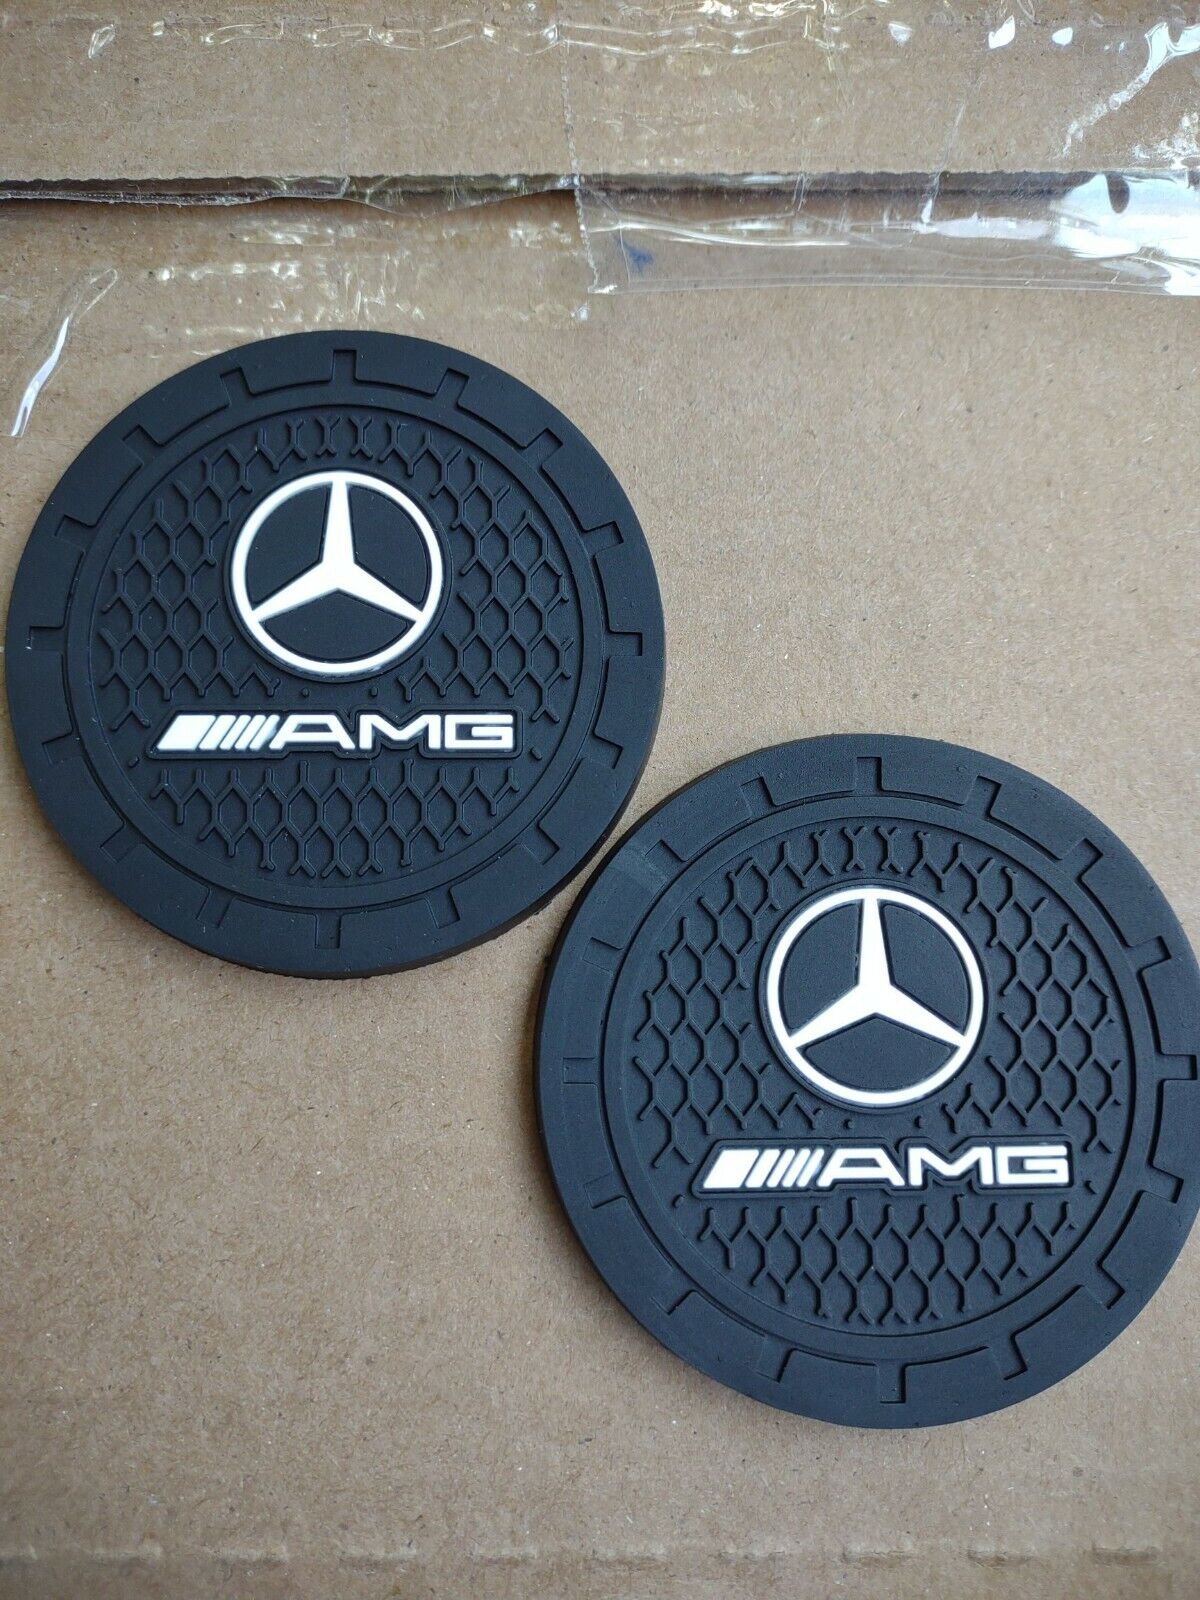 Mercedes BENZ AMG Accessories Car Logo Round Cup Holder Coaster Insert